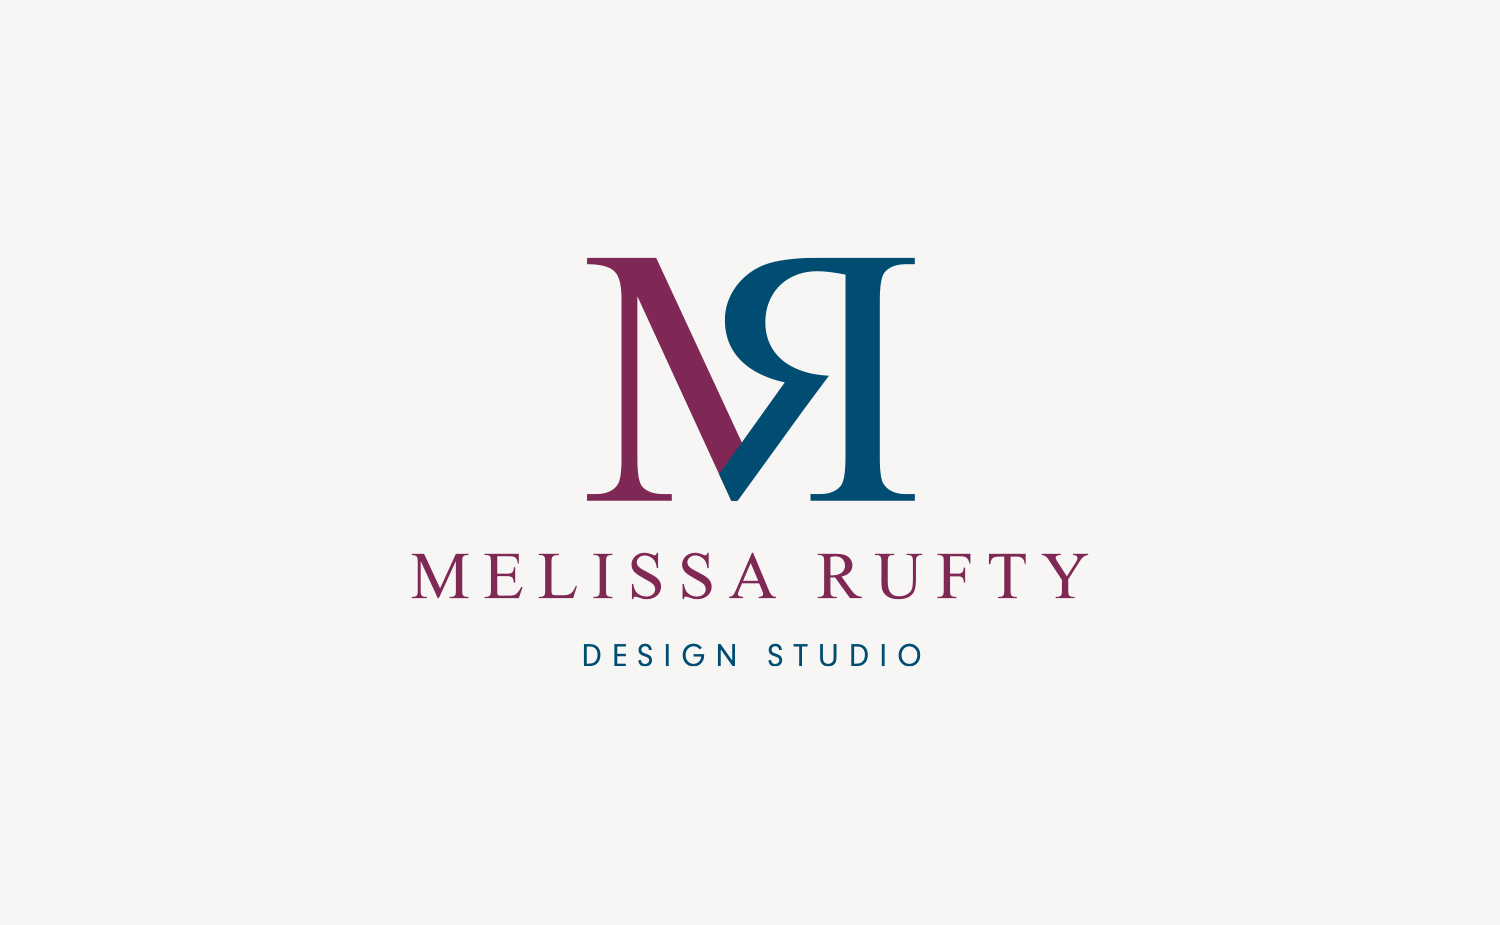 Melissa Rufty - Neiter Creative